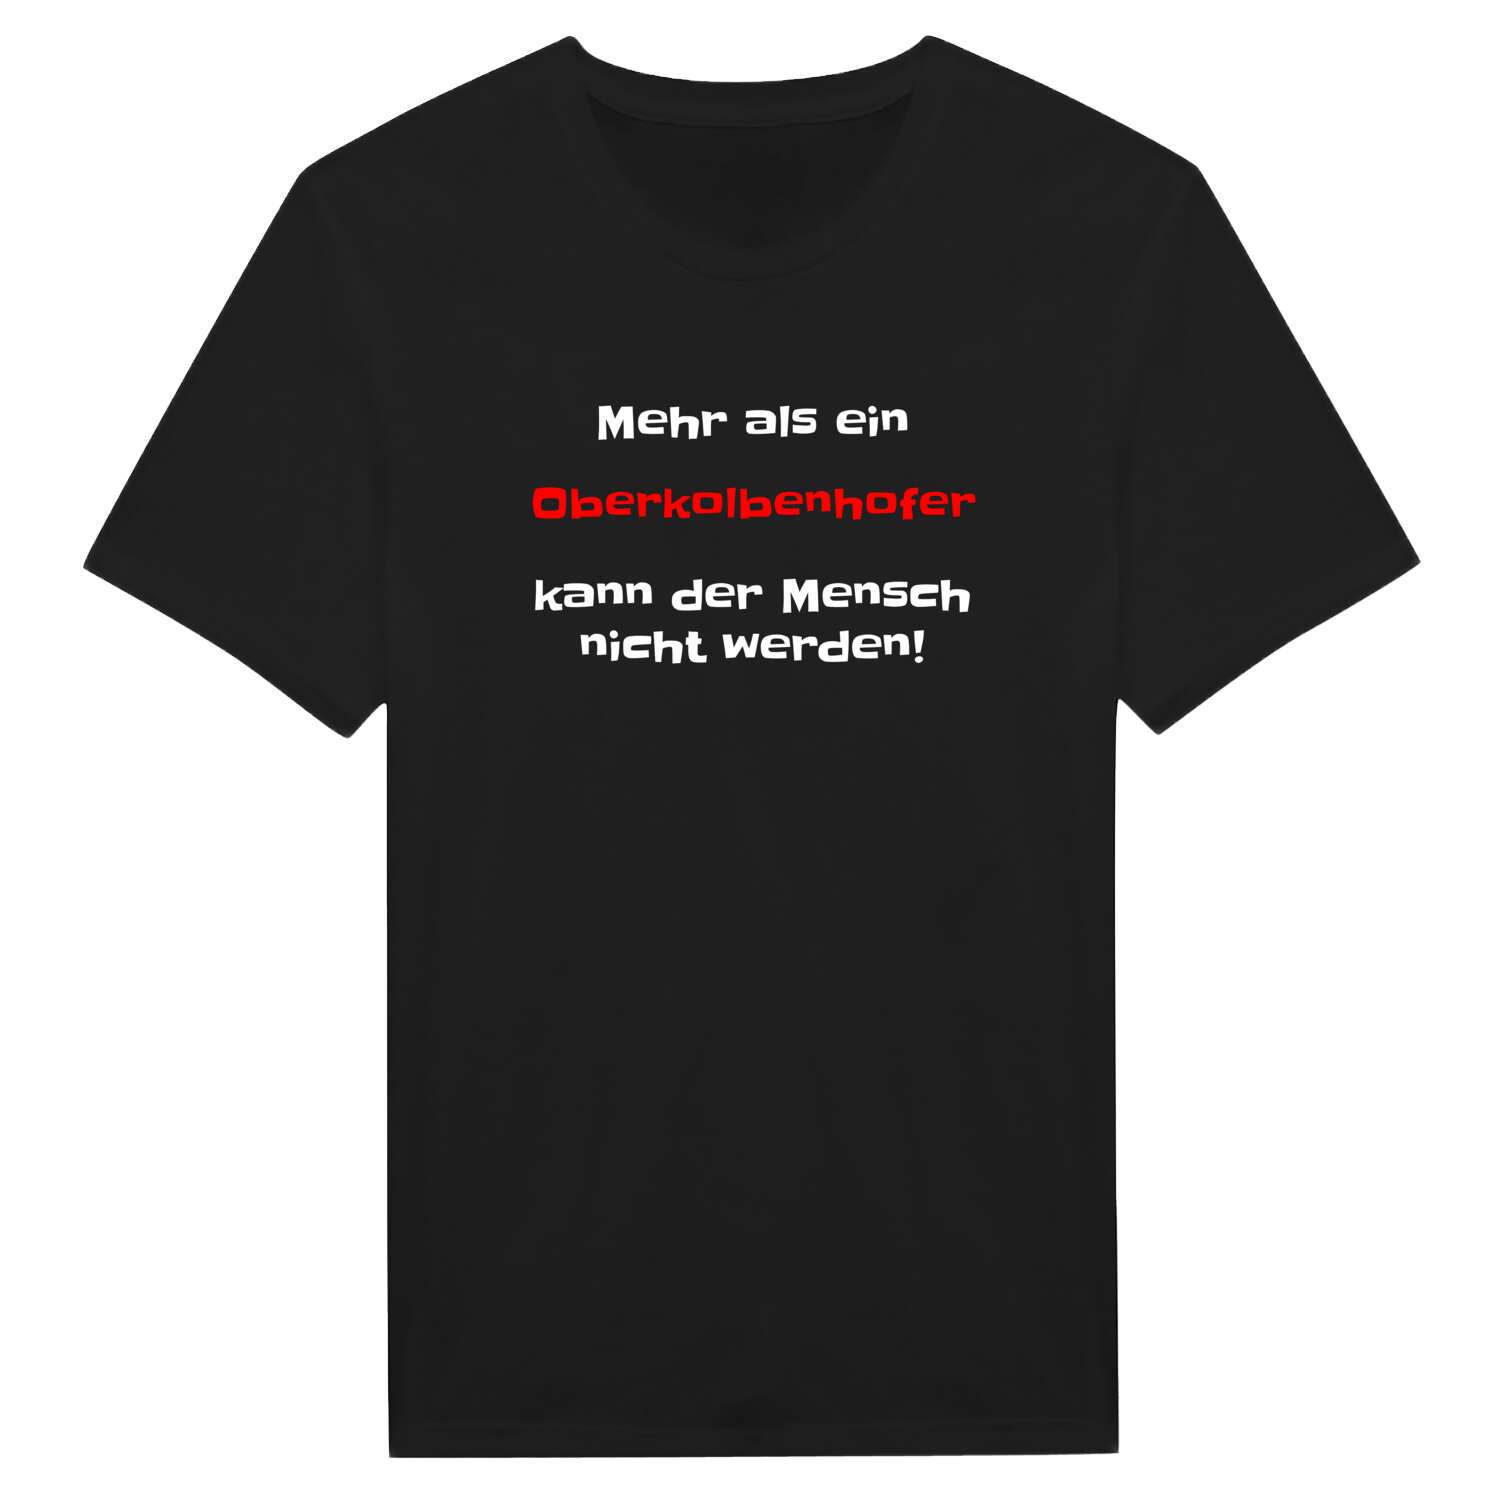 Oberkolbenhof T-Shirt »Mehr als ein«